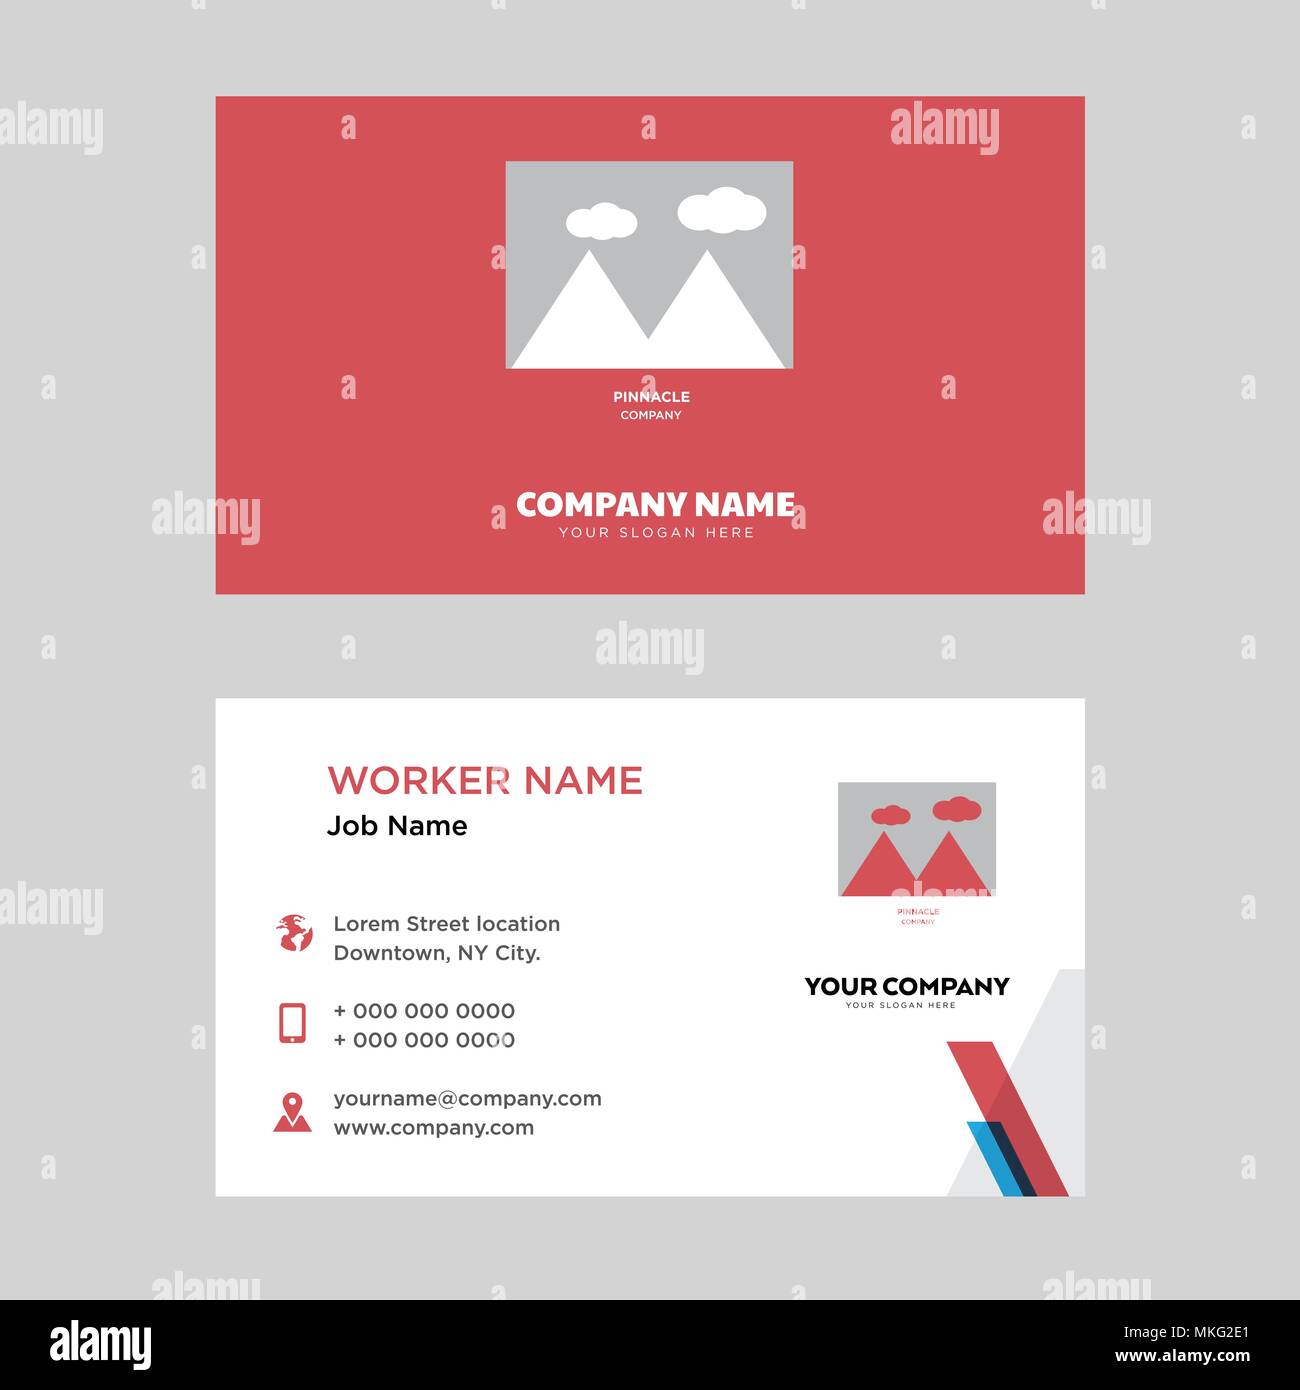 Pinnacle business card modello di progettazione, visita per la vostra azienda, moderna identità orizzontale vettore scheda Illustrazione Vettoriale